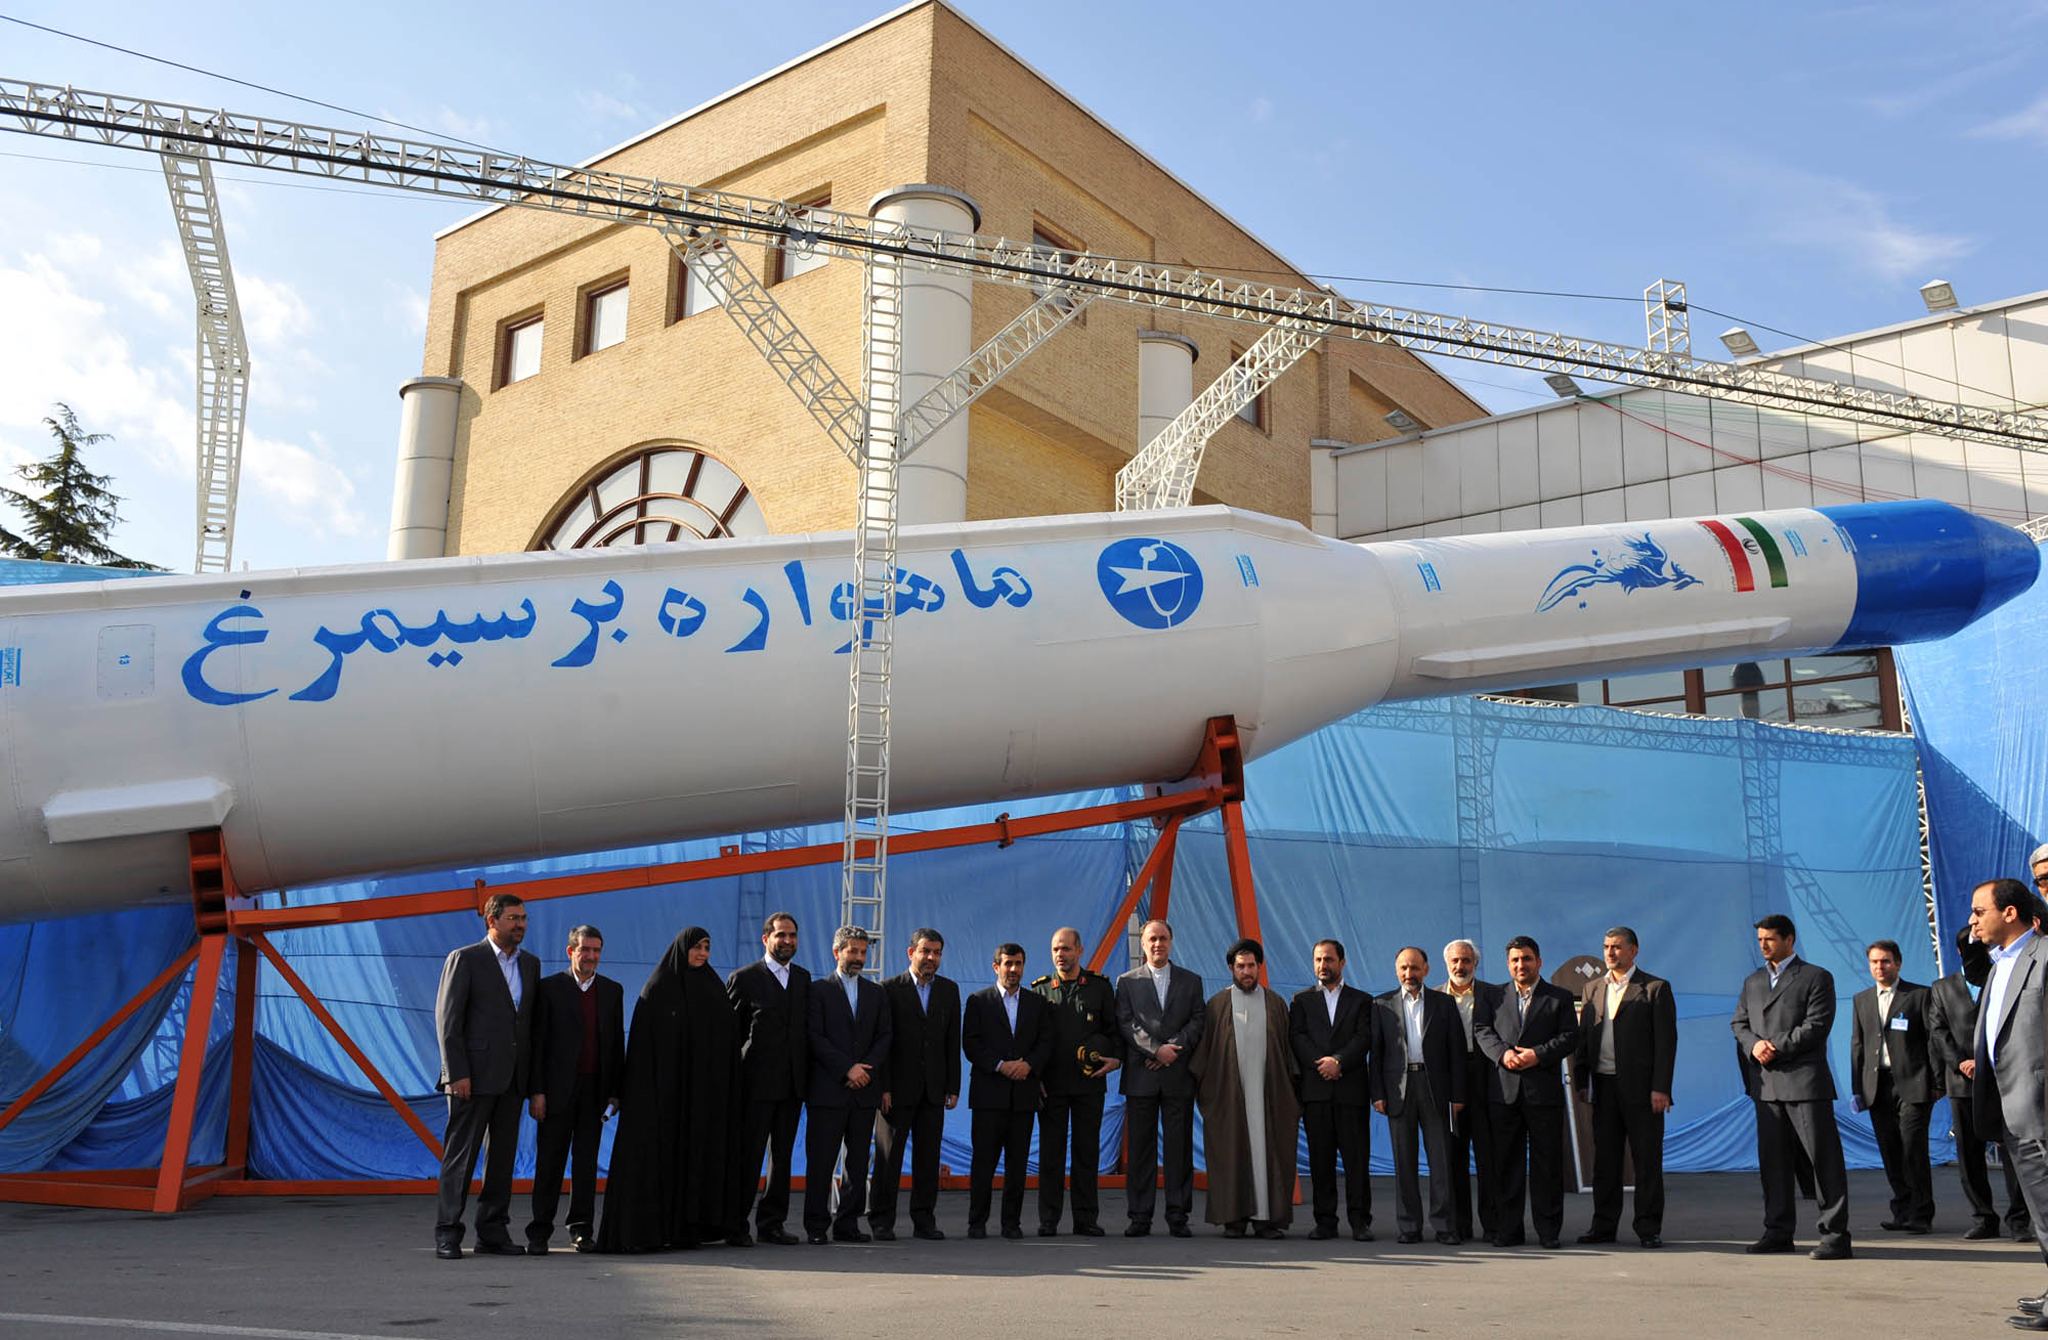 إطلاق إيران صاروخاً إلى الفضاء يرخي بظلاله على مفاوضات فيينا النووية